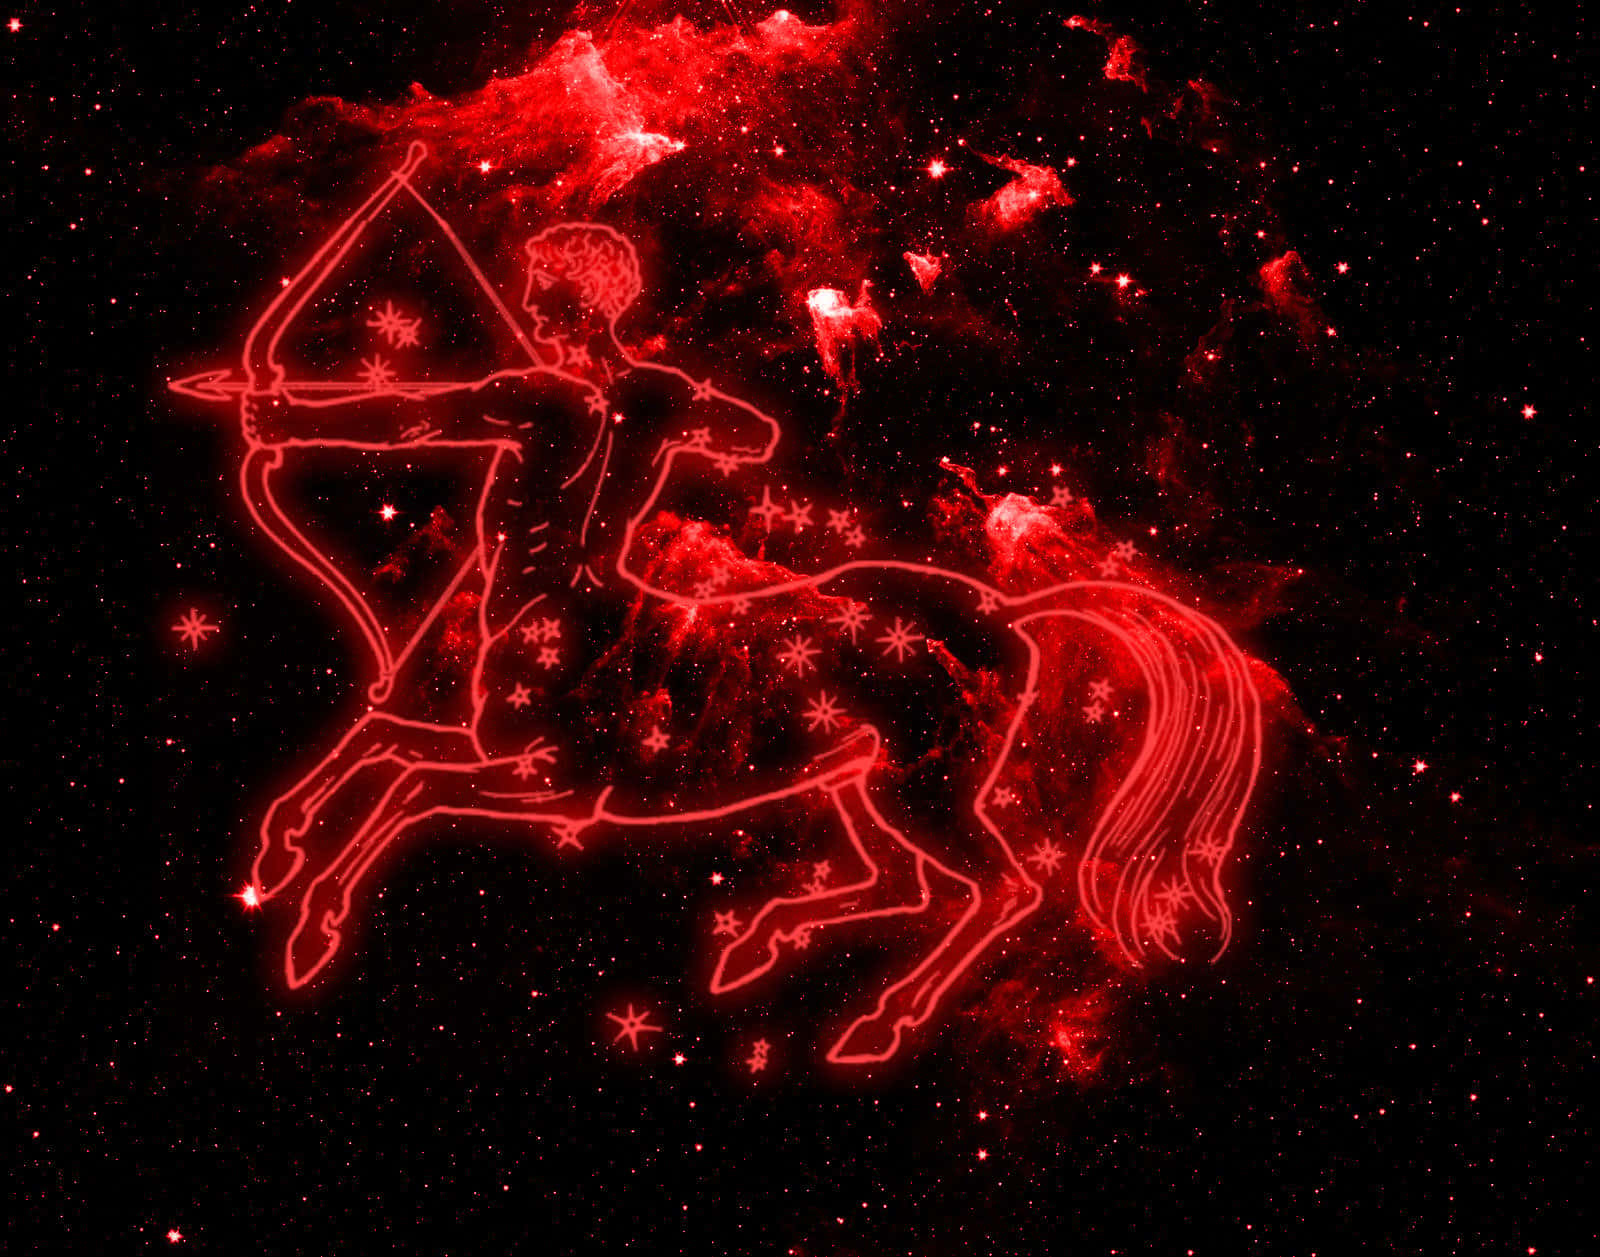 Unsegno Zodiacale Sagittario Che Mostra Il Simbolo Dell'arciere E Del Centauro.